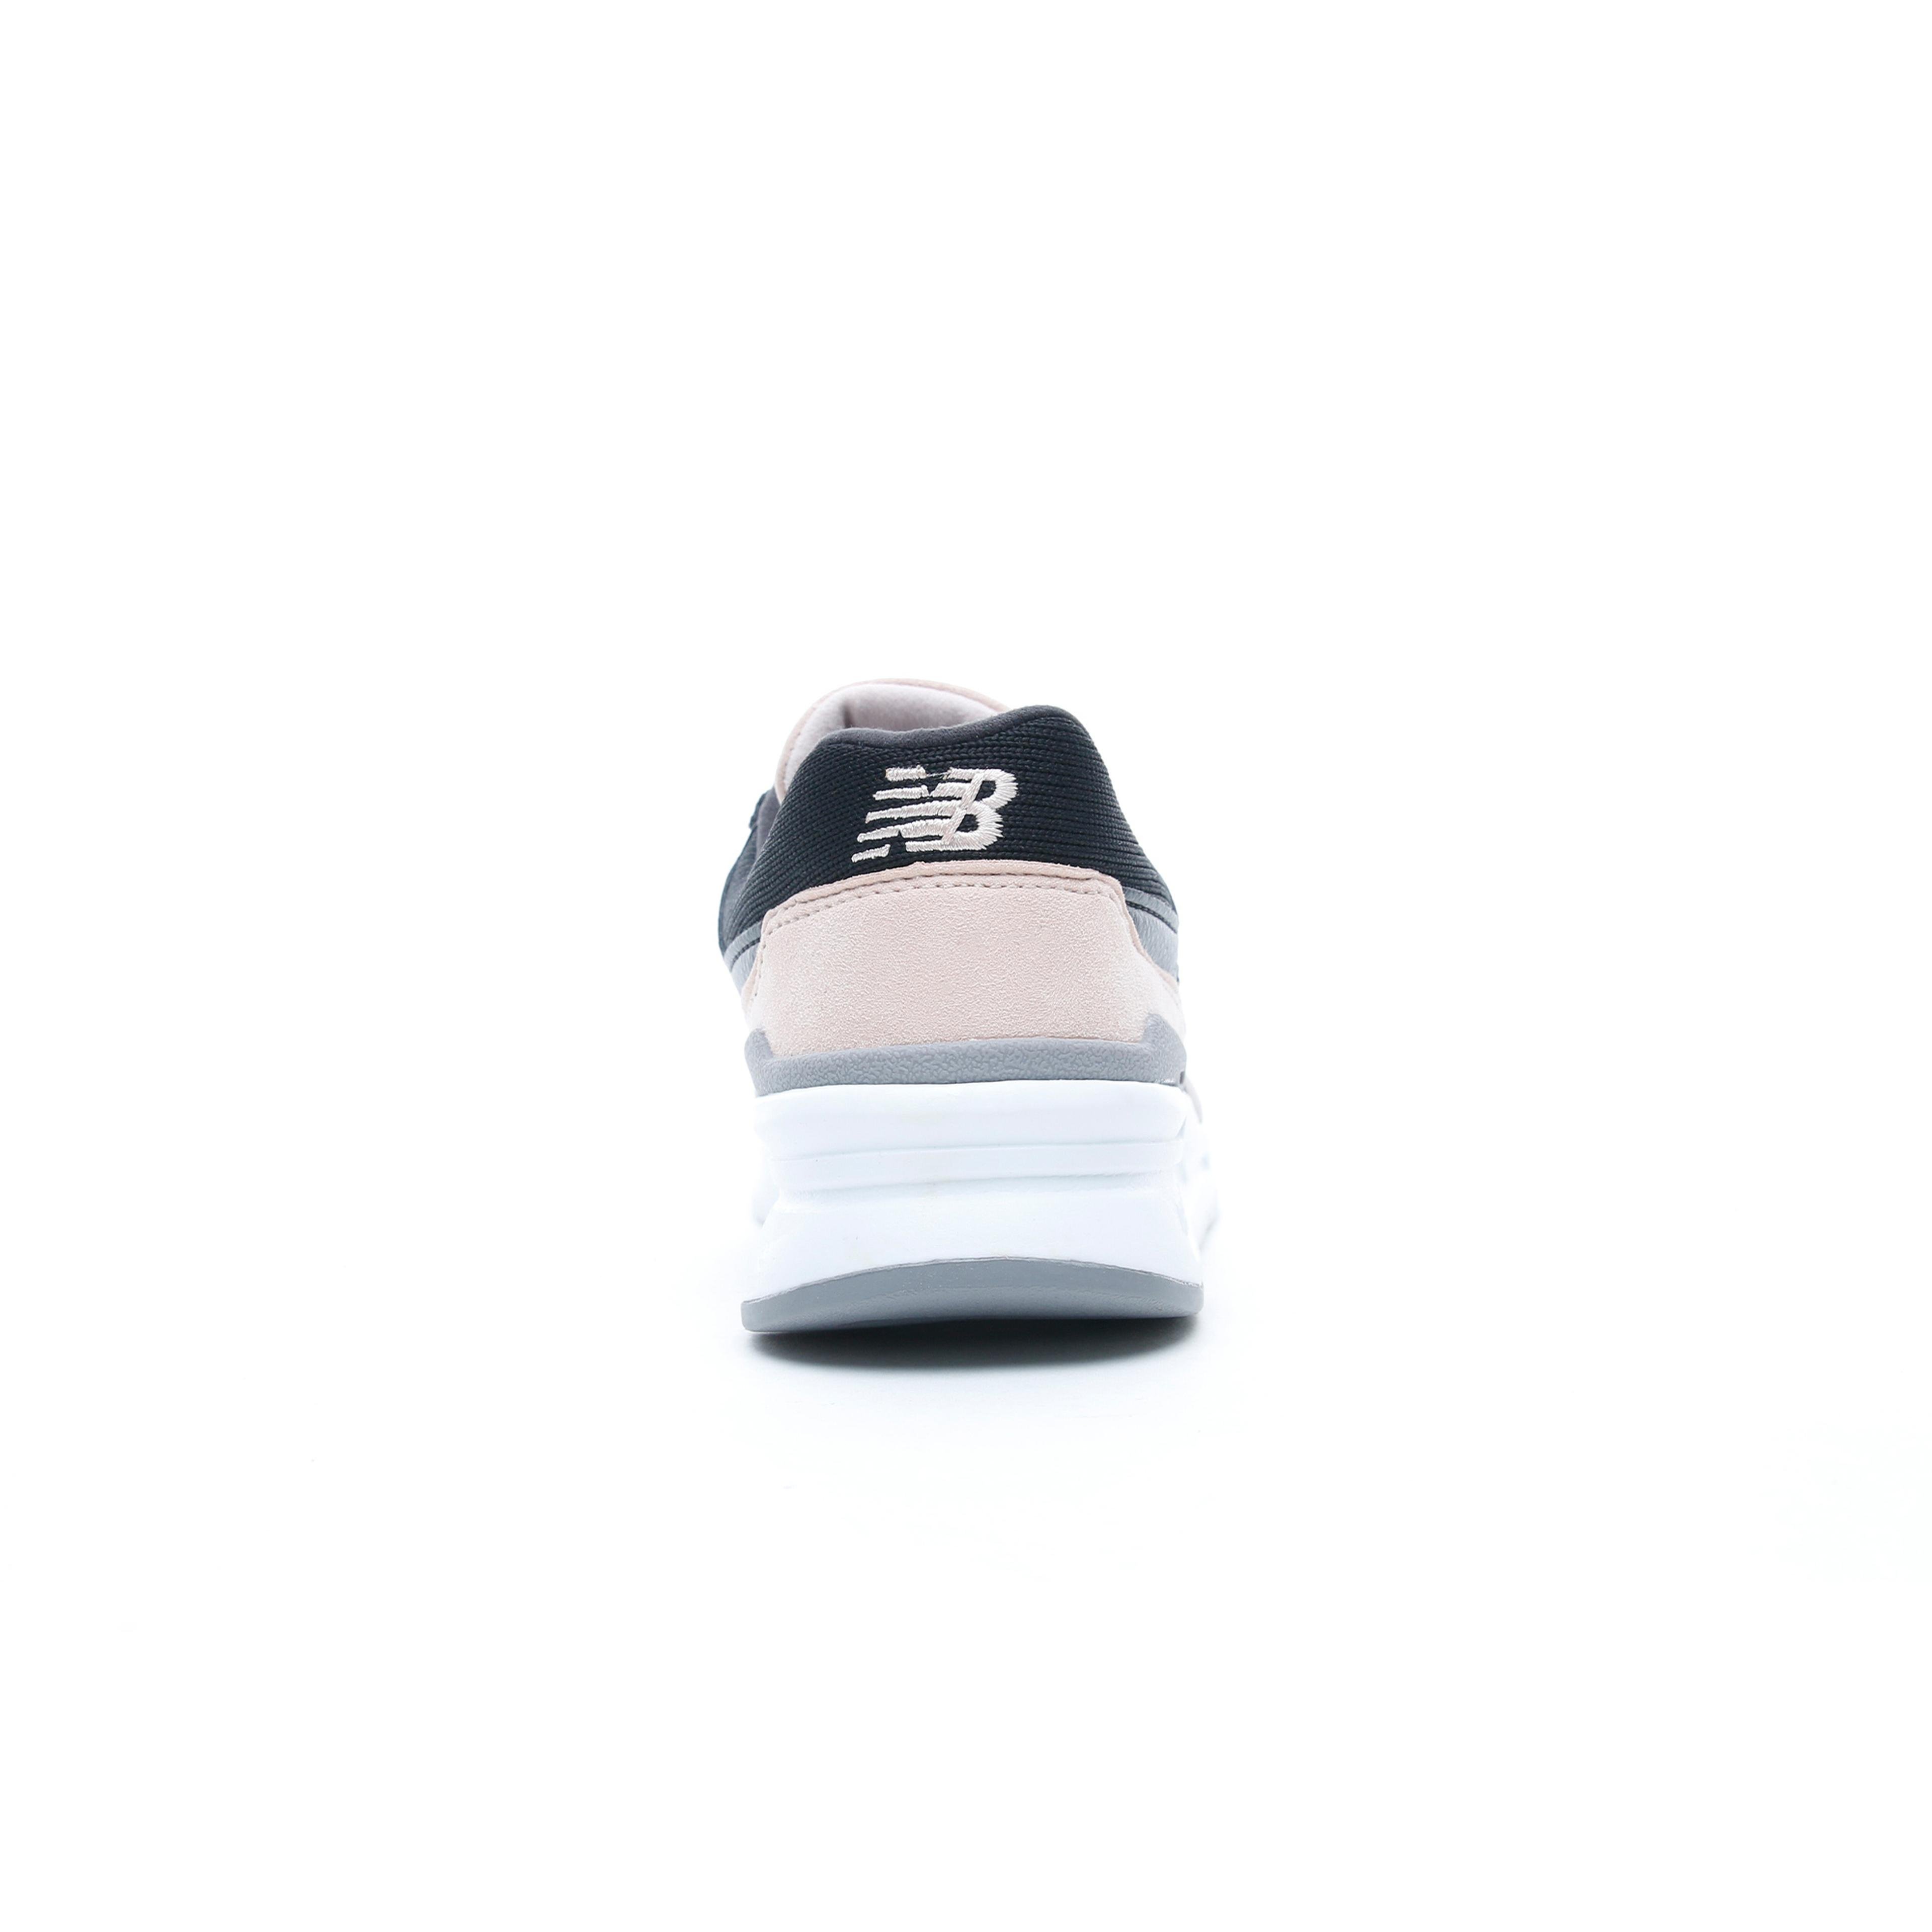 New Balance 997 Kadın Gri-Siyah Spor Ayakkabı